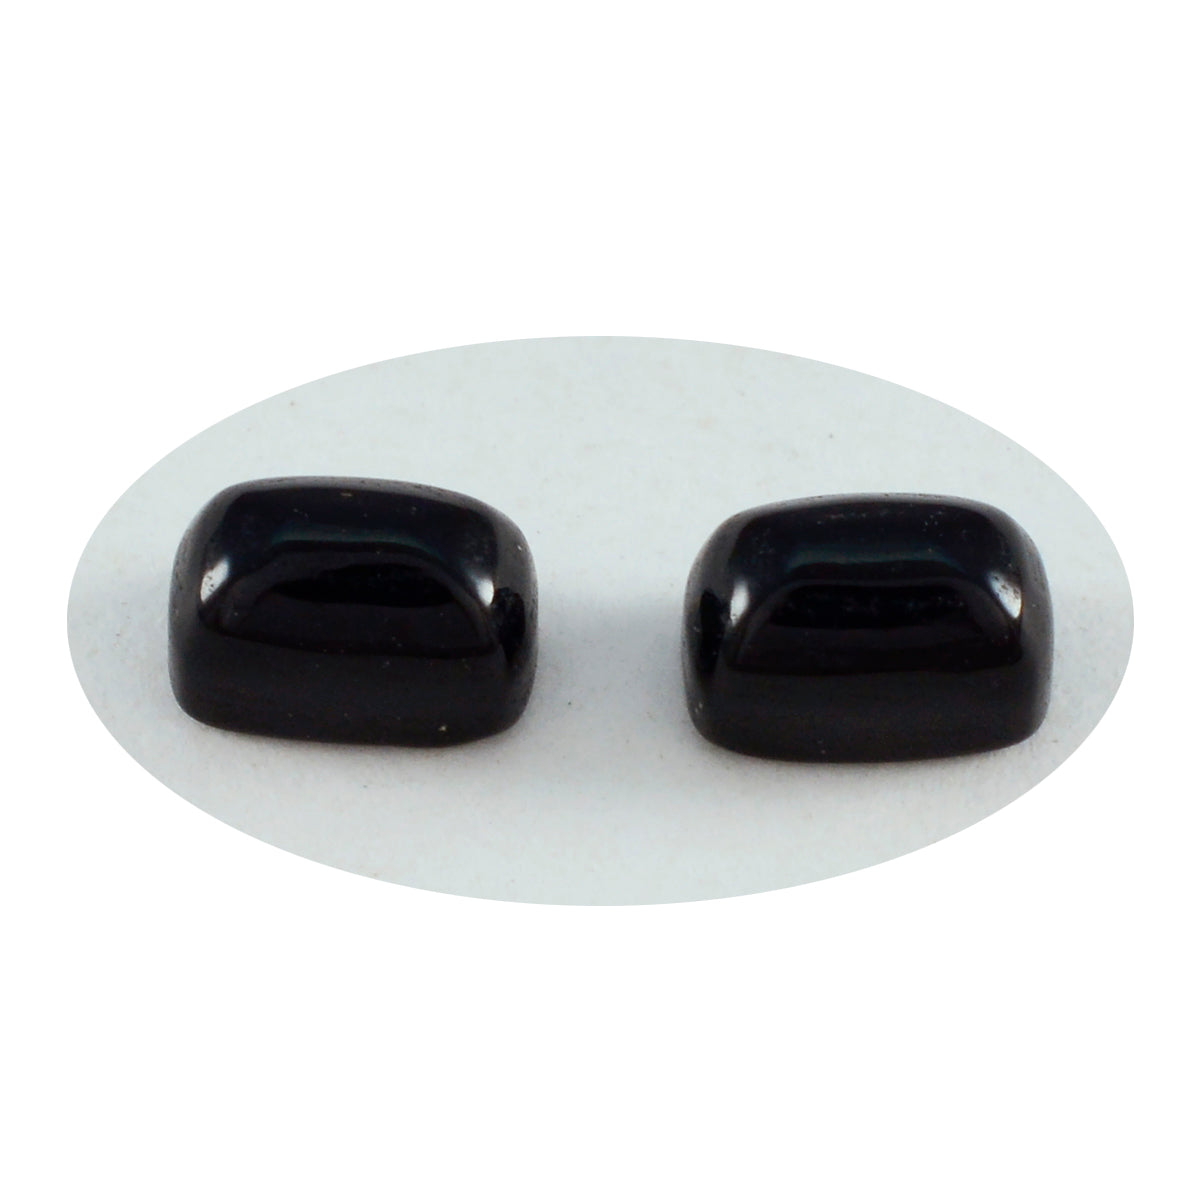 Riyogems 1PC Black Onyx Cabochon 5x7 mm Octagon Shape good-looking Quality Loose Gem